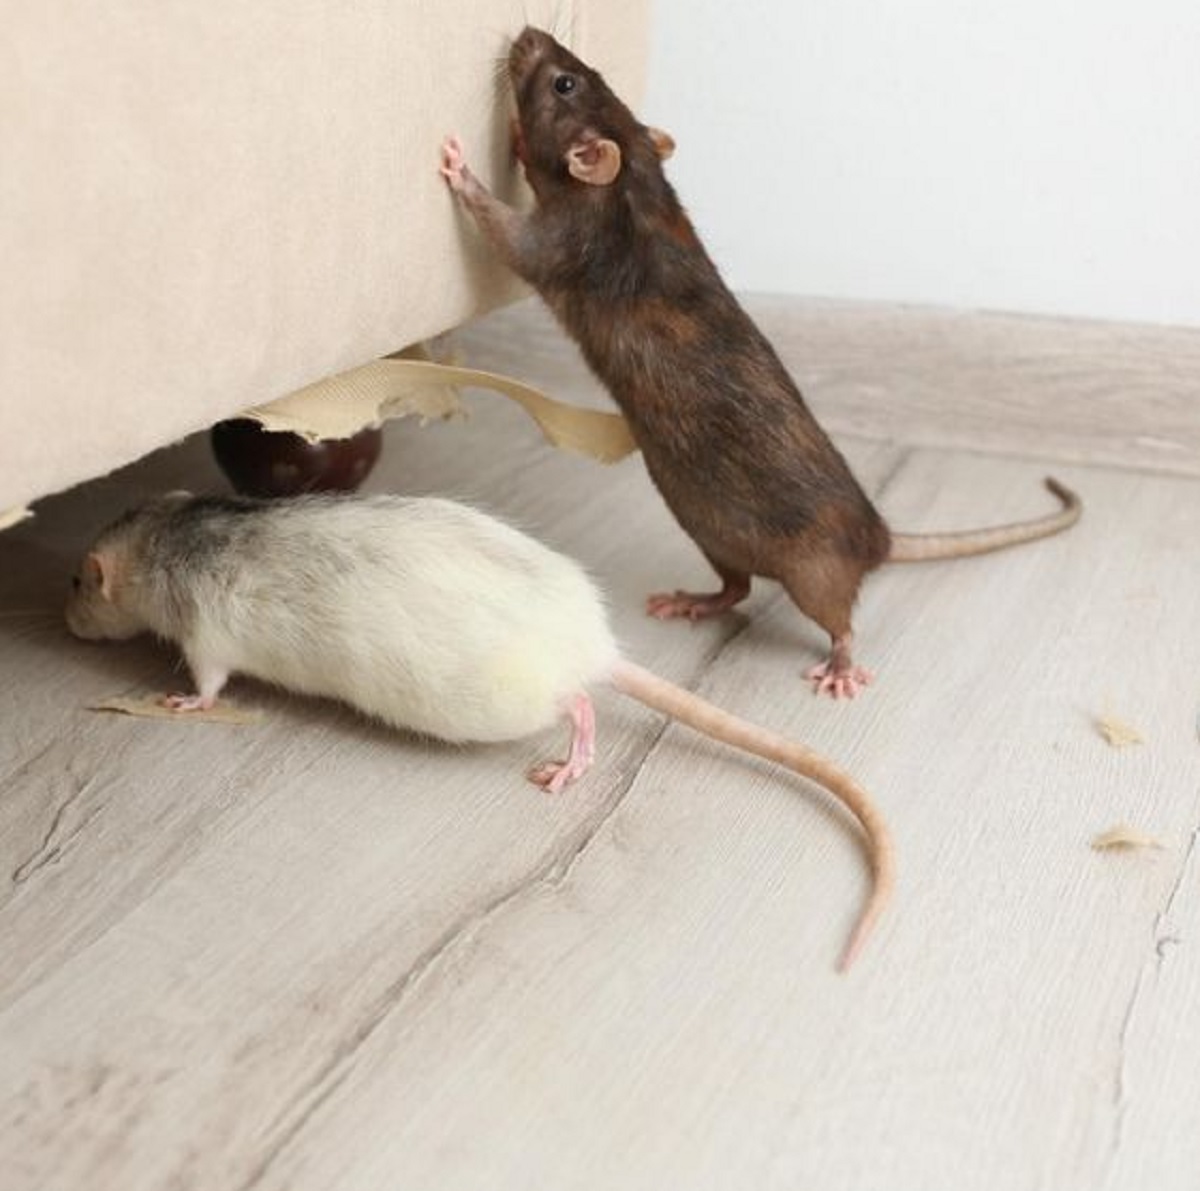 Plafon Rumah Terasa Berisik? Bisa Jadi Ada Tikus! Yuk Simak 6 Cara Mengusir Tikus Dari Plafon Rumah